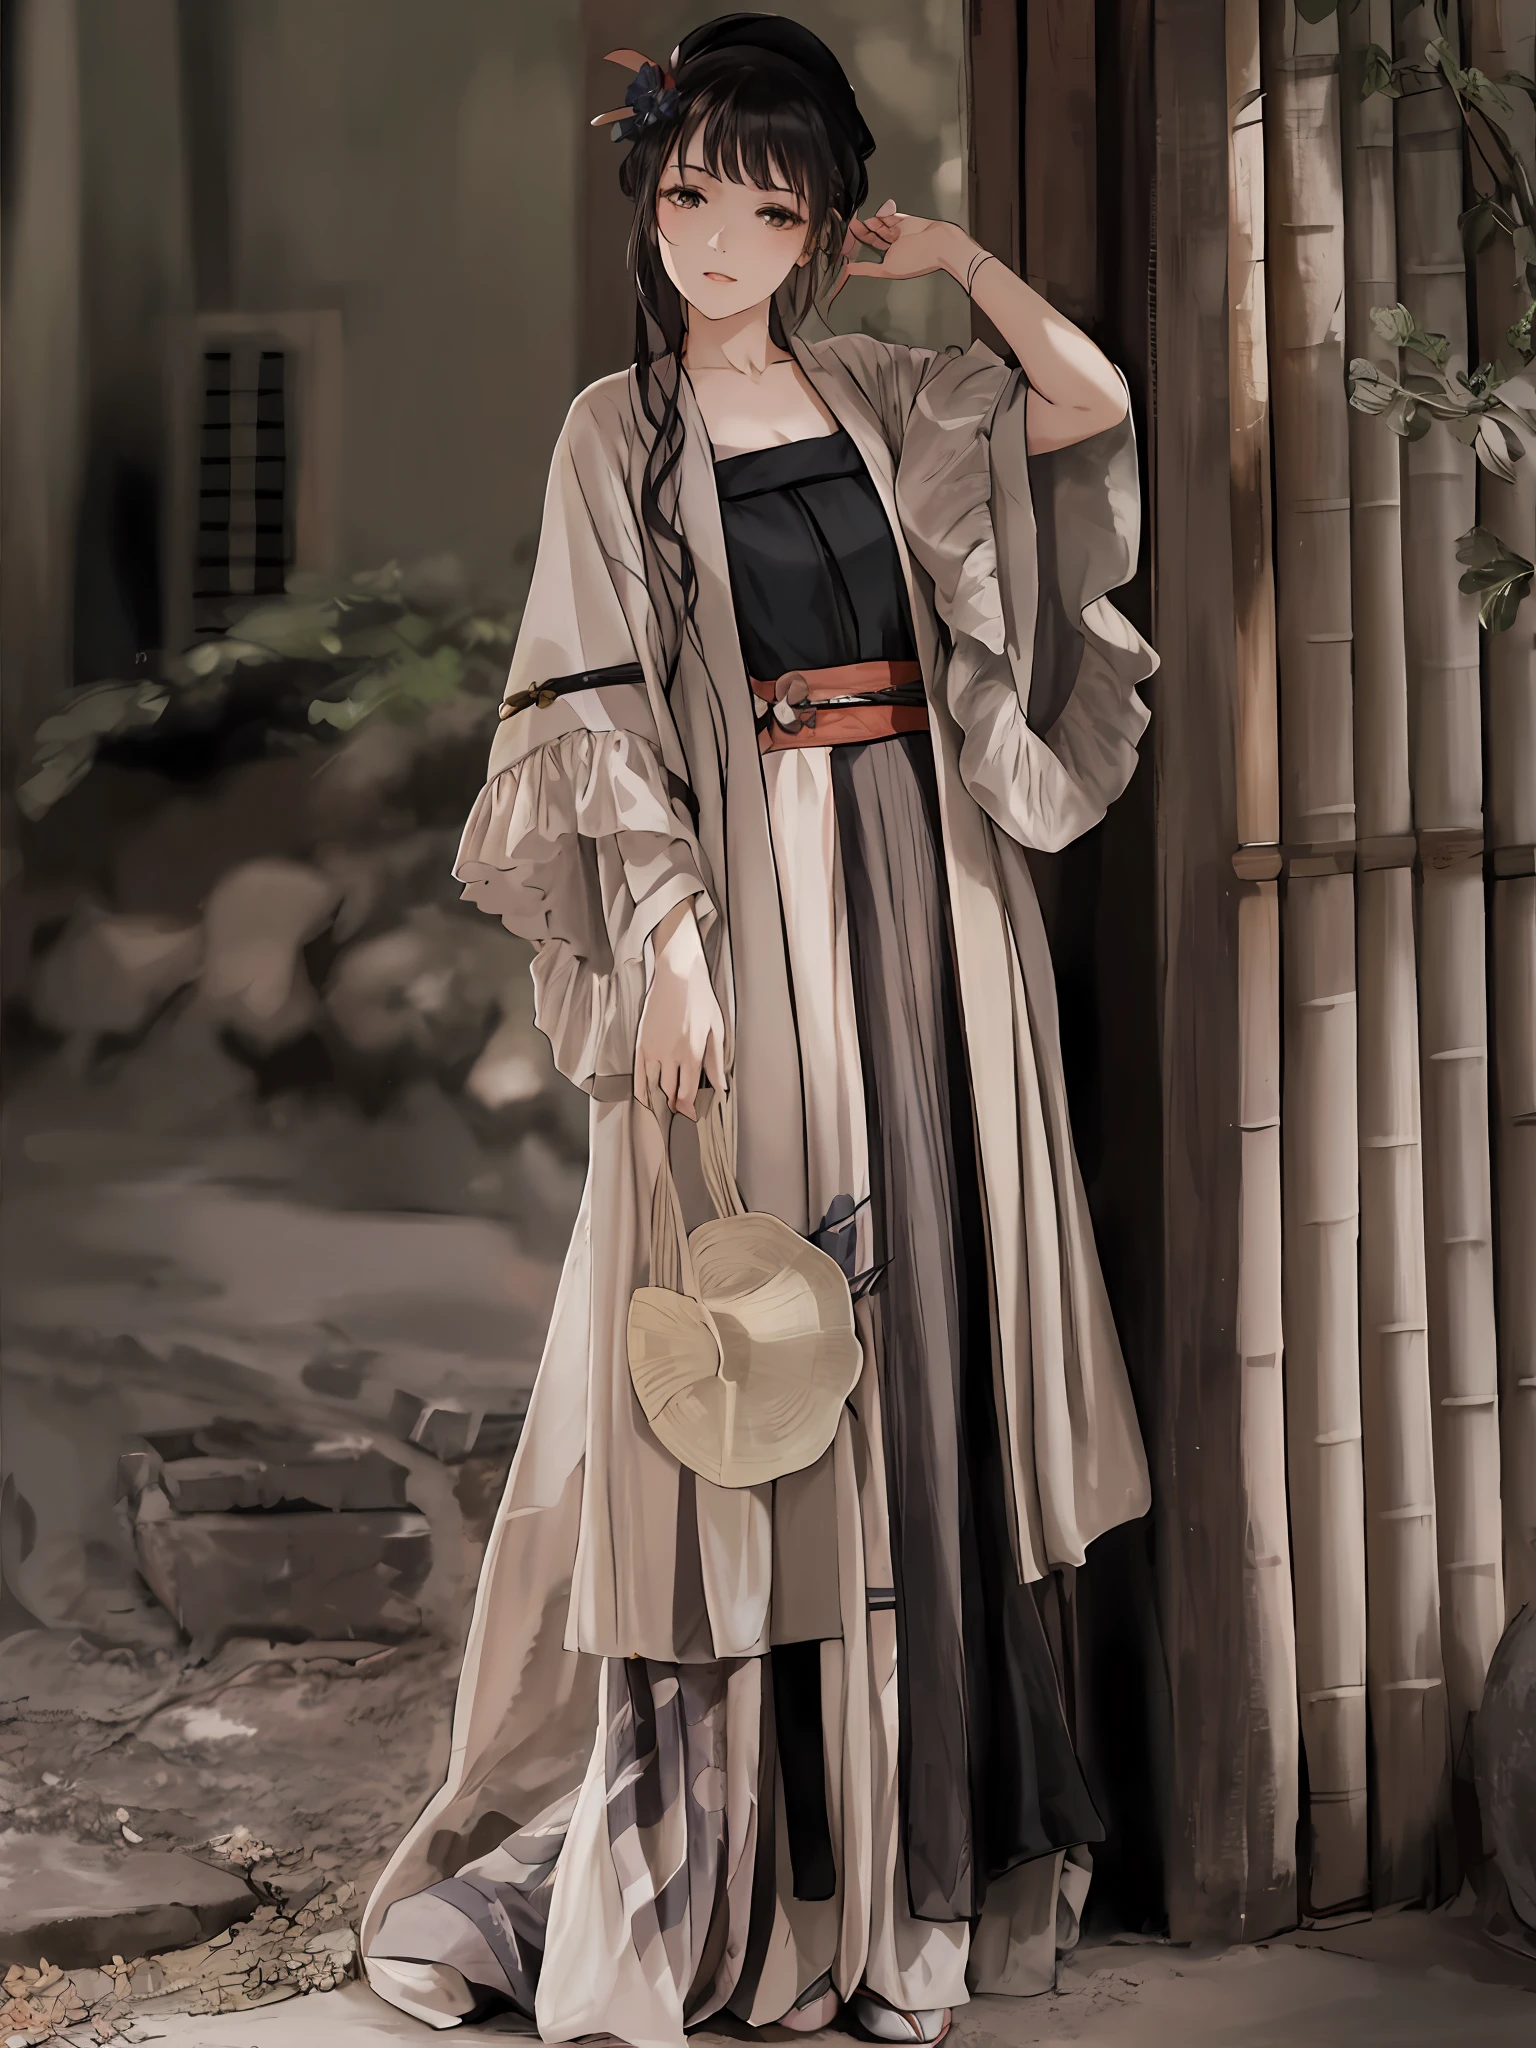 امرأة عرفية ترتدي فستانًا طويلًا وقبعة تقف أمام هيكل من الخيزران, long beautiful flowing كيمونو, هانفو, يرتدي ملابس طويلة بطلاقة, pale and coloured كيمونو, كيمونو, زي متعدد الطبقات, classic كيمونو, ملابس يابانية, مع الملابس الصينية القديمة, ملابس يوكاتا الأنيقة, wearing كيمونو, الملابس الصينية التقليدية, hakama كيمونو